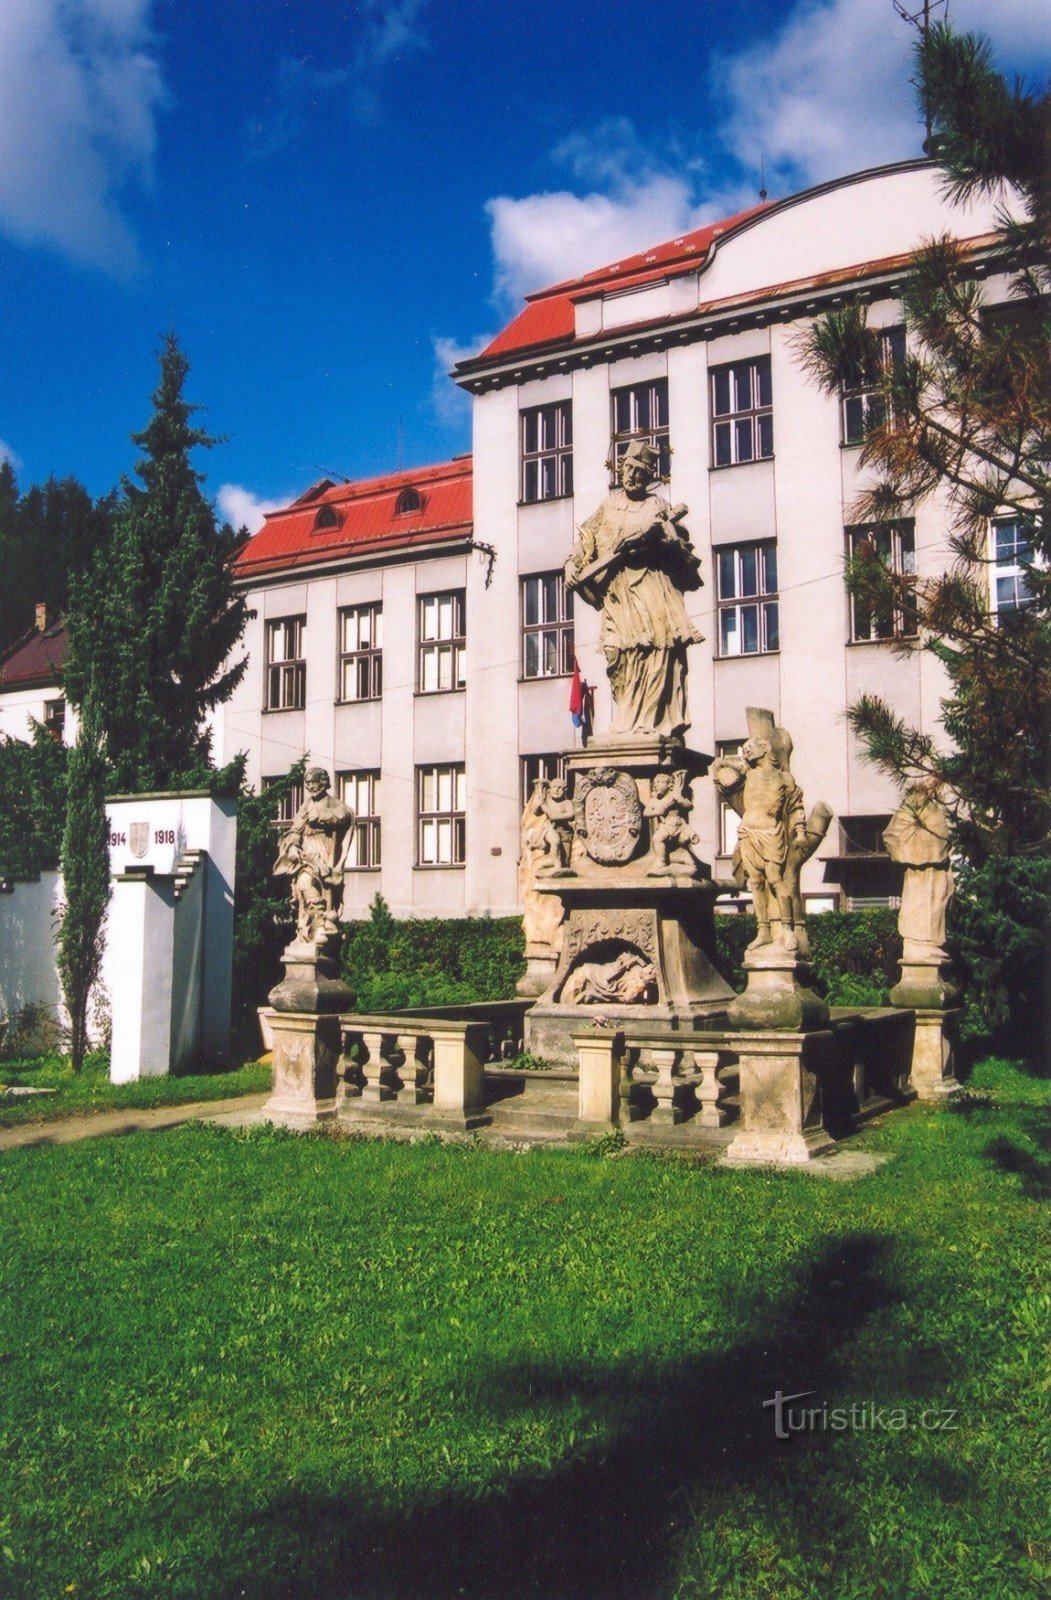 Březová nad Svitavou - bức tượng của St. Jan Nepomucký